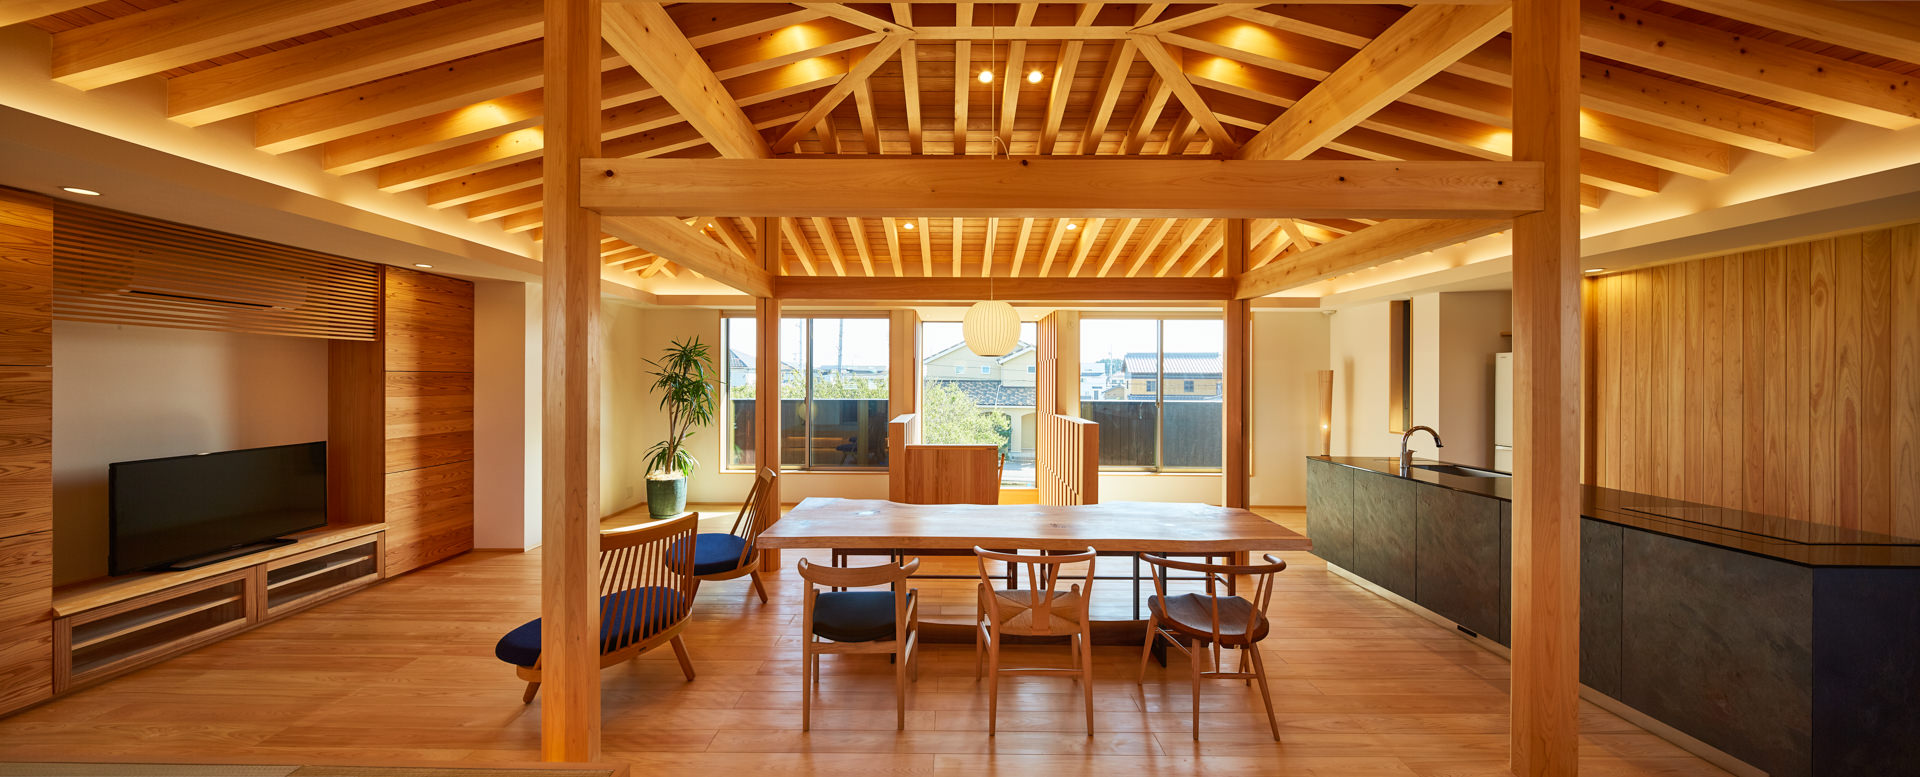 WEB建築サイトｈｏｍｉｆｙに「桑原木材の家」が掲載されました 記事：圧倒的な木素材の美しさと温もりのある木の家